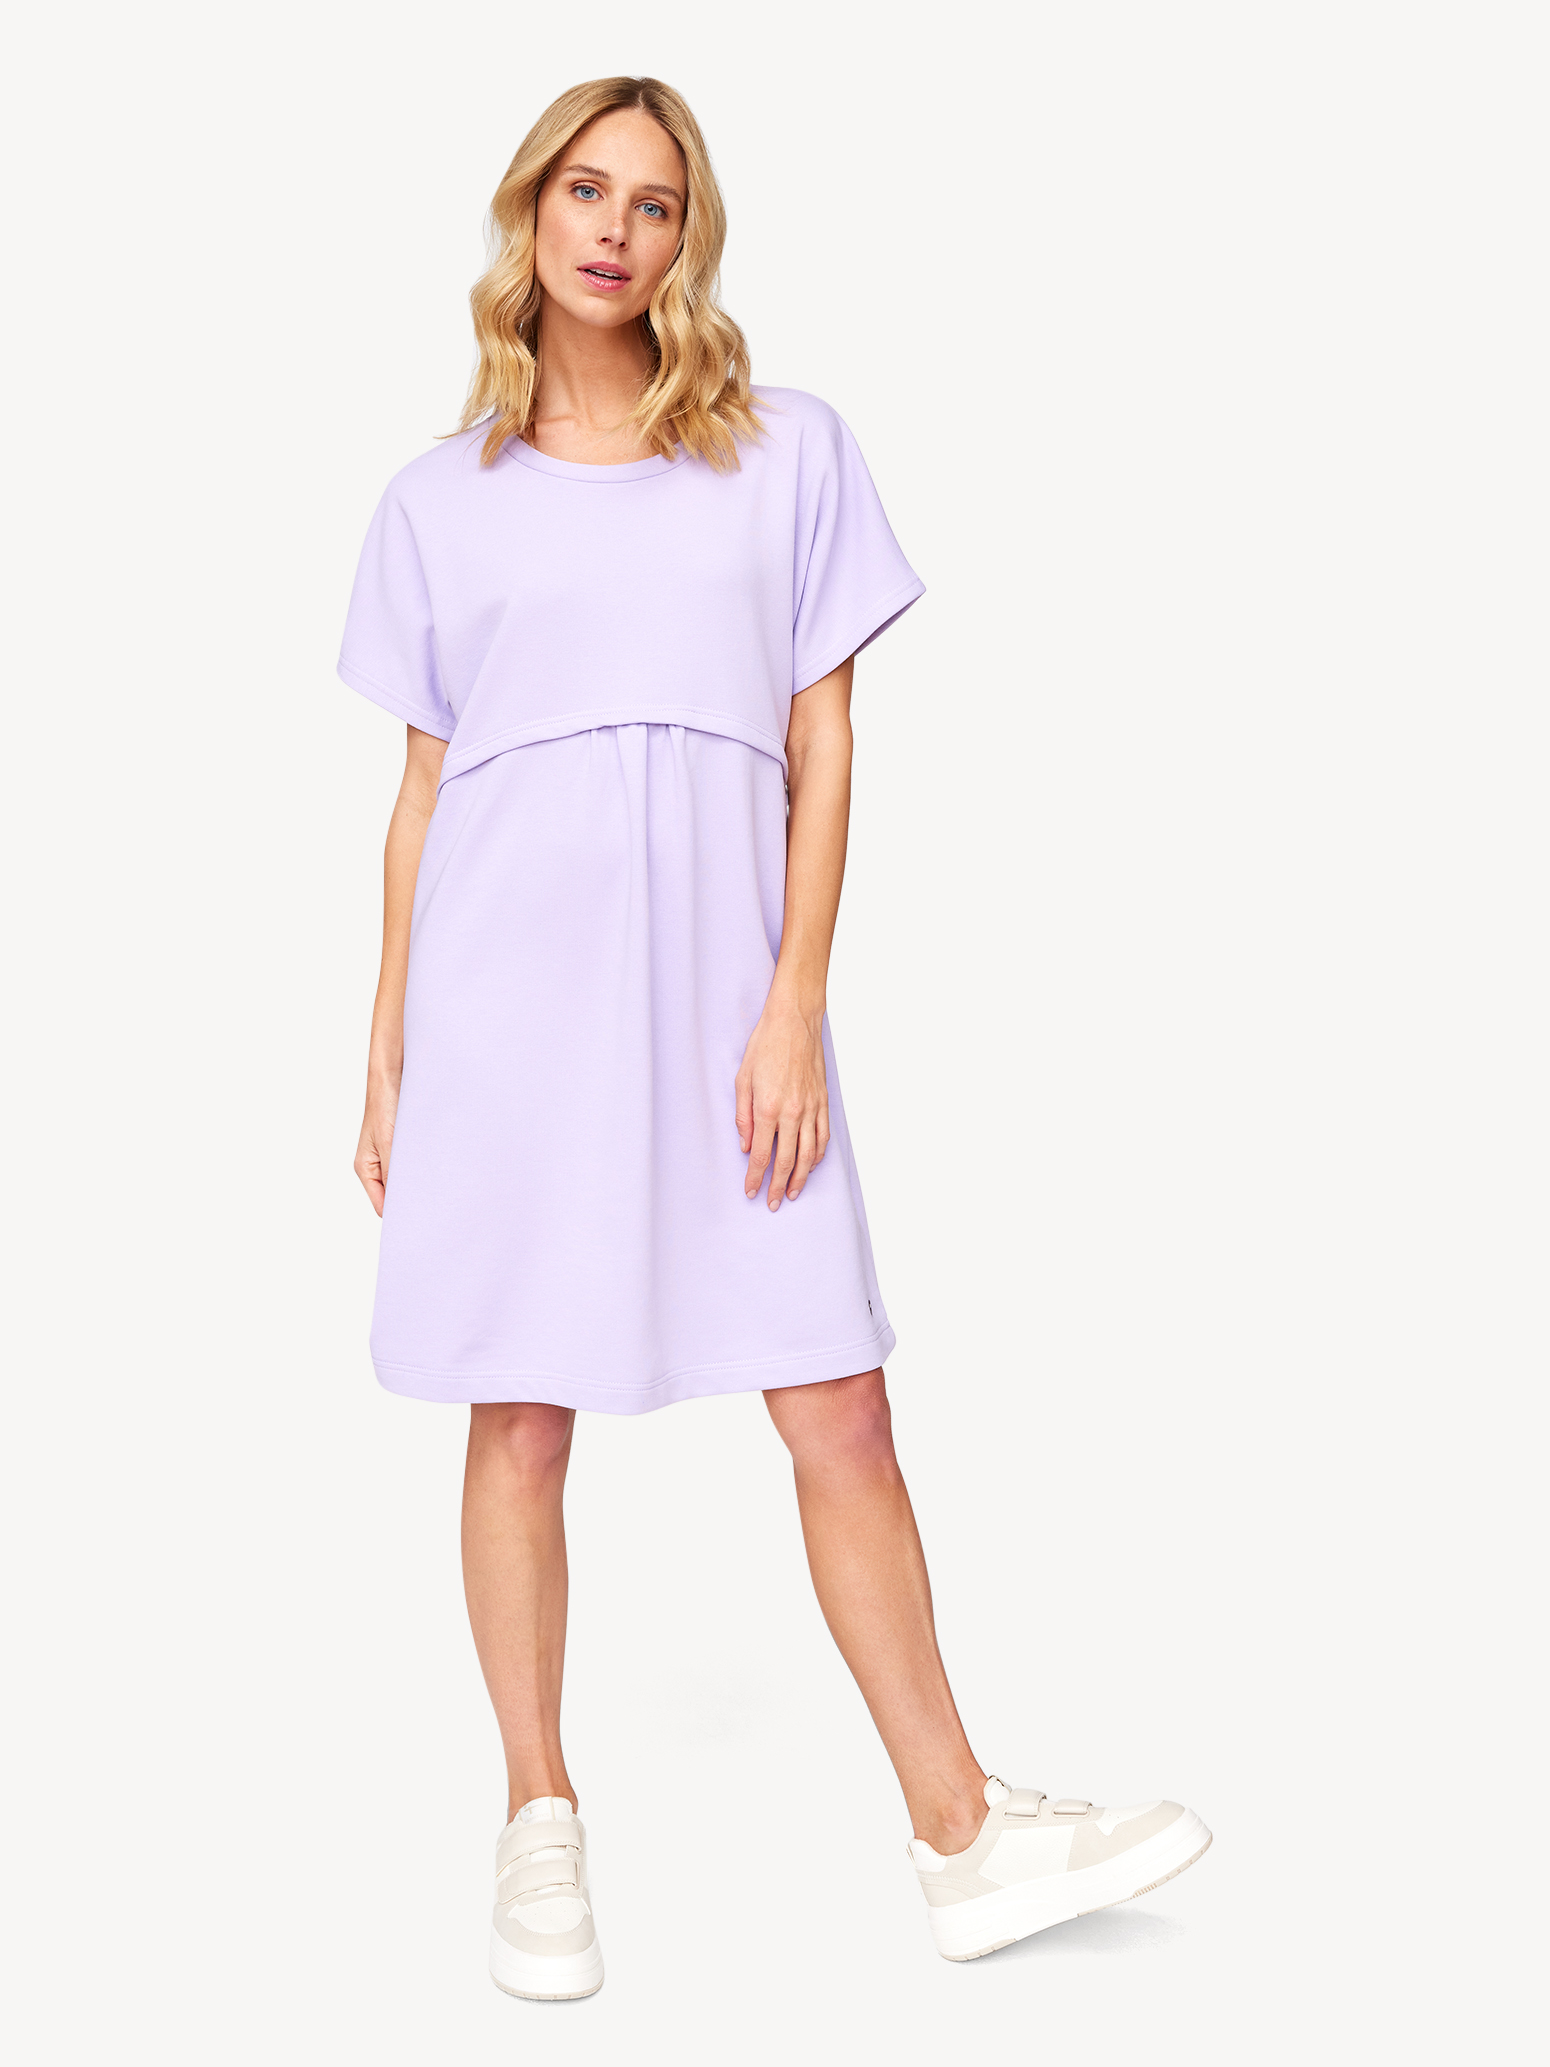 Röcke Tamaris & TAW0068-40058: online Kleider - kaufen! Kleid lila